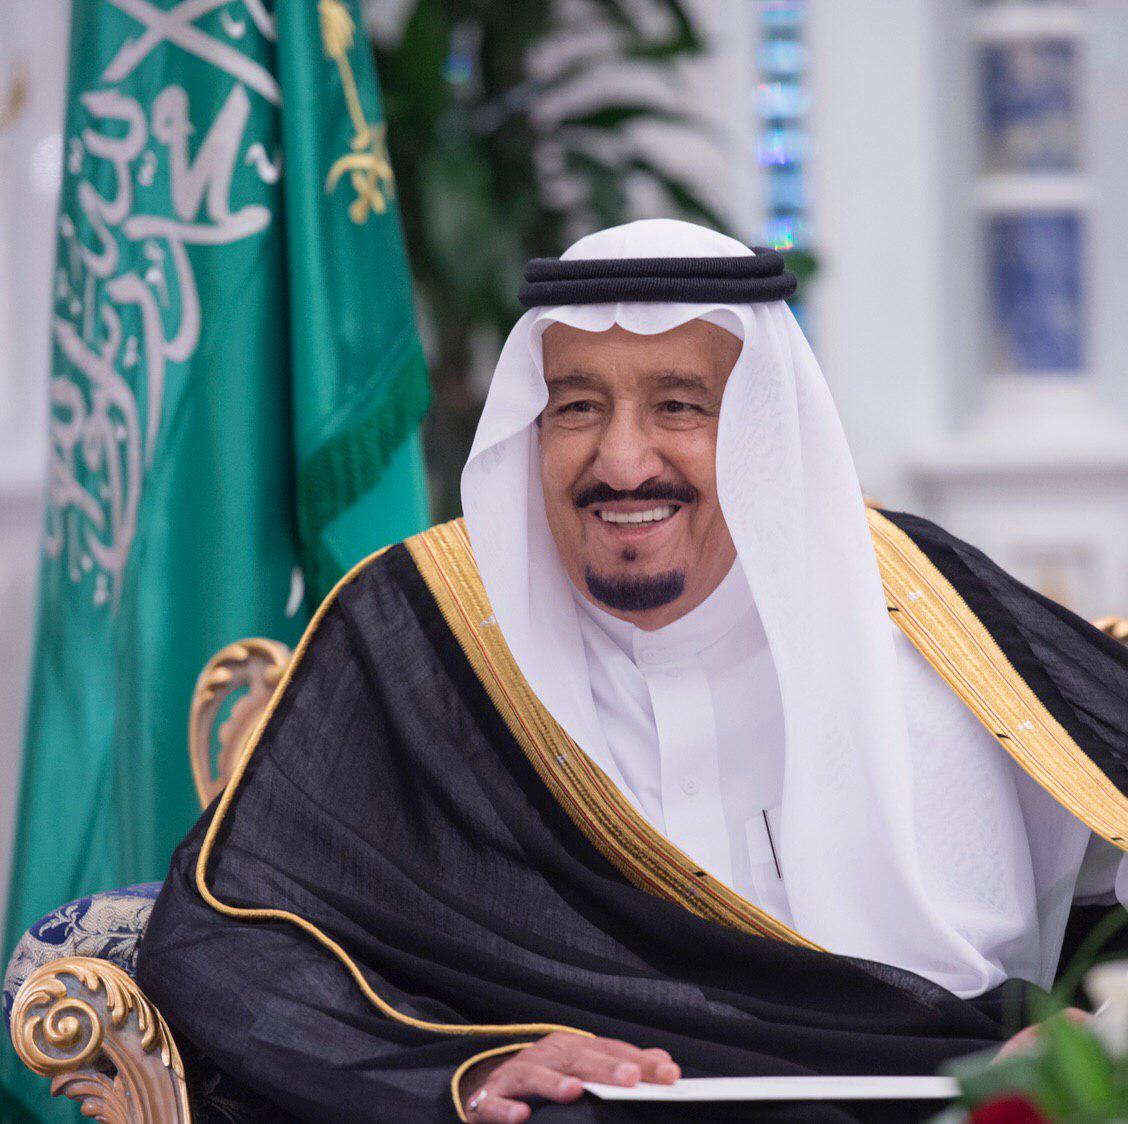 القيادة الإماراتية تهنئ الملك سلمان بنجاح منظار القولون